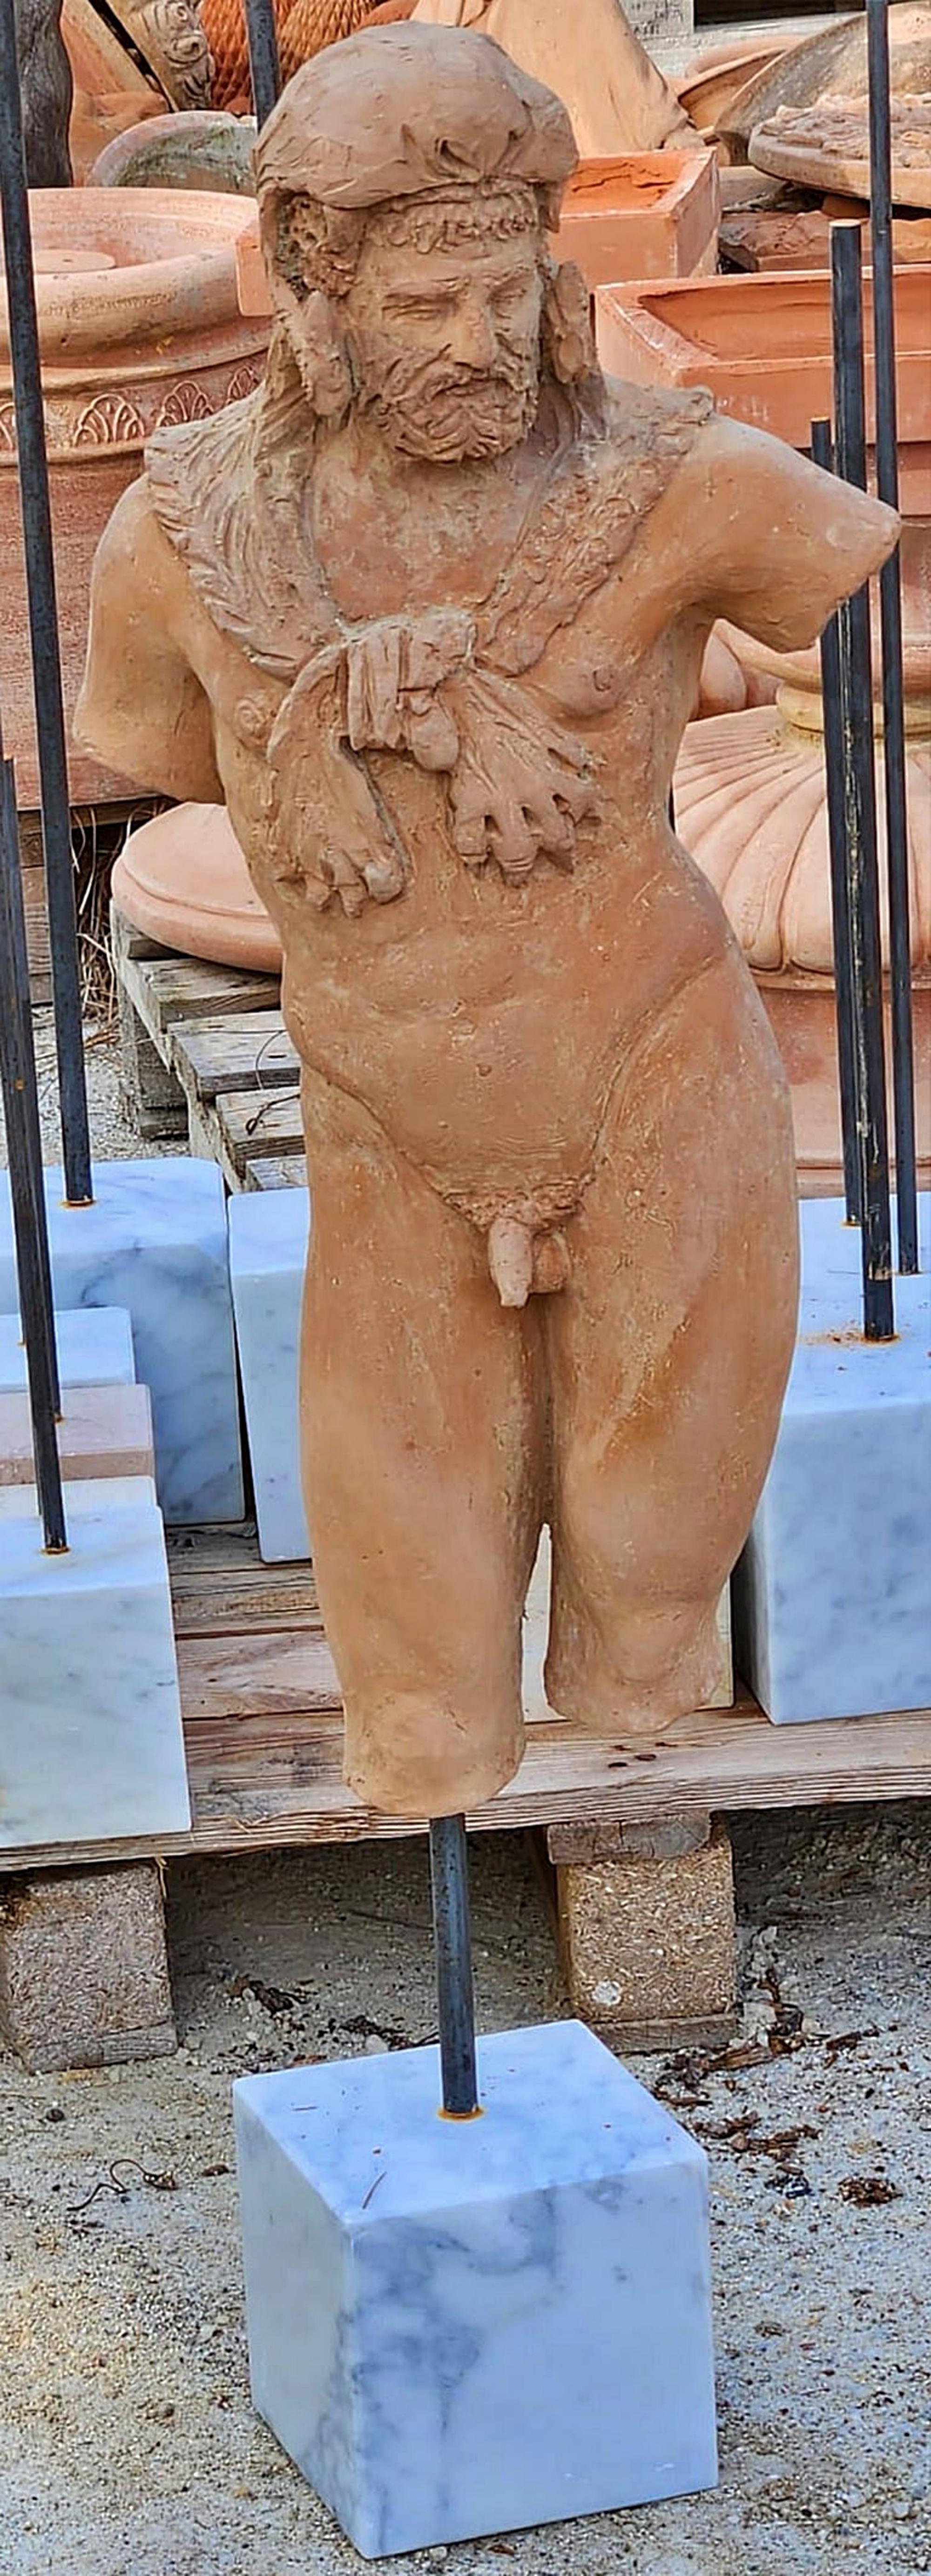 Skulptur des Herkules in Terrakotta Kopie der vatikanischen Museen Anfang des 20.

Reproduktion des 